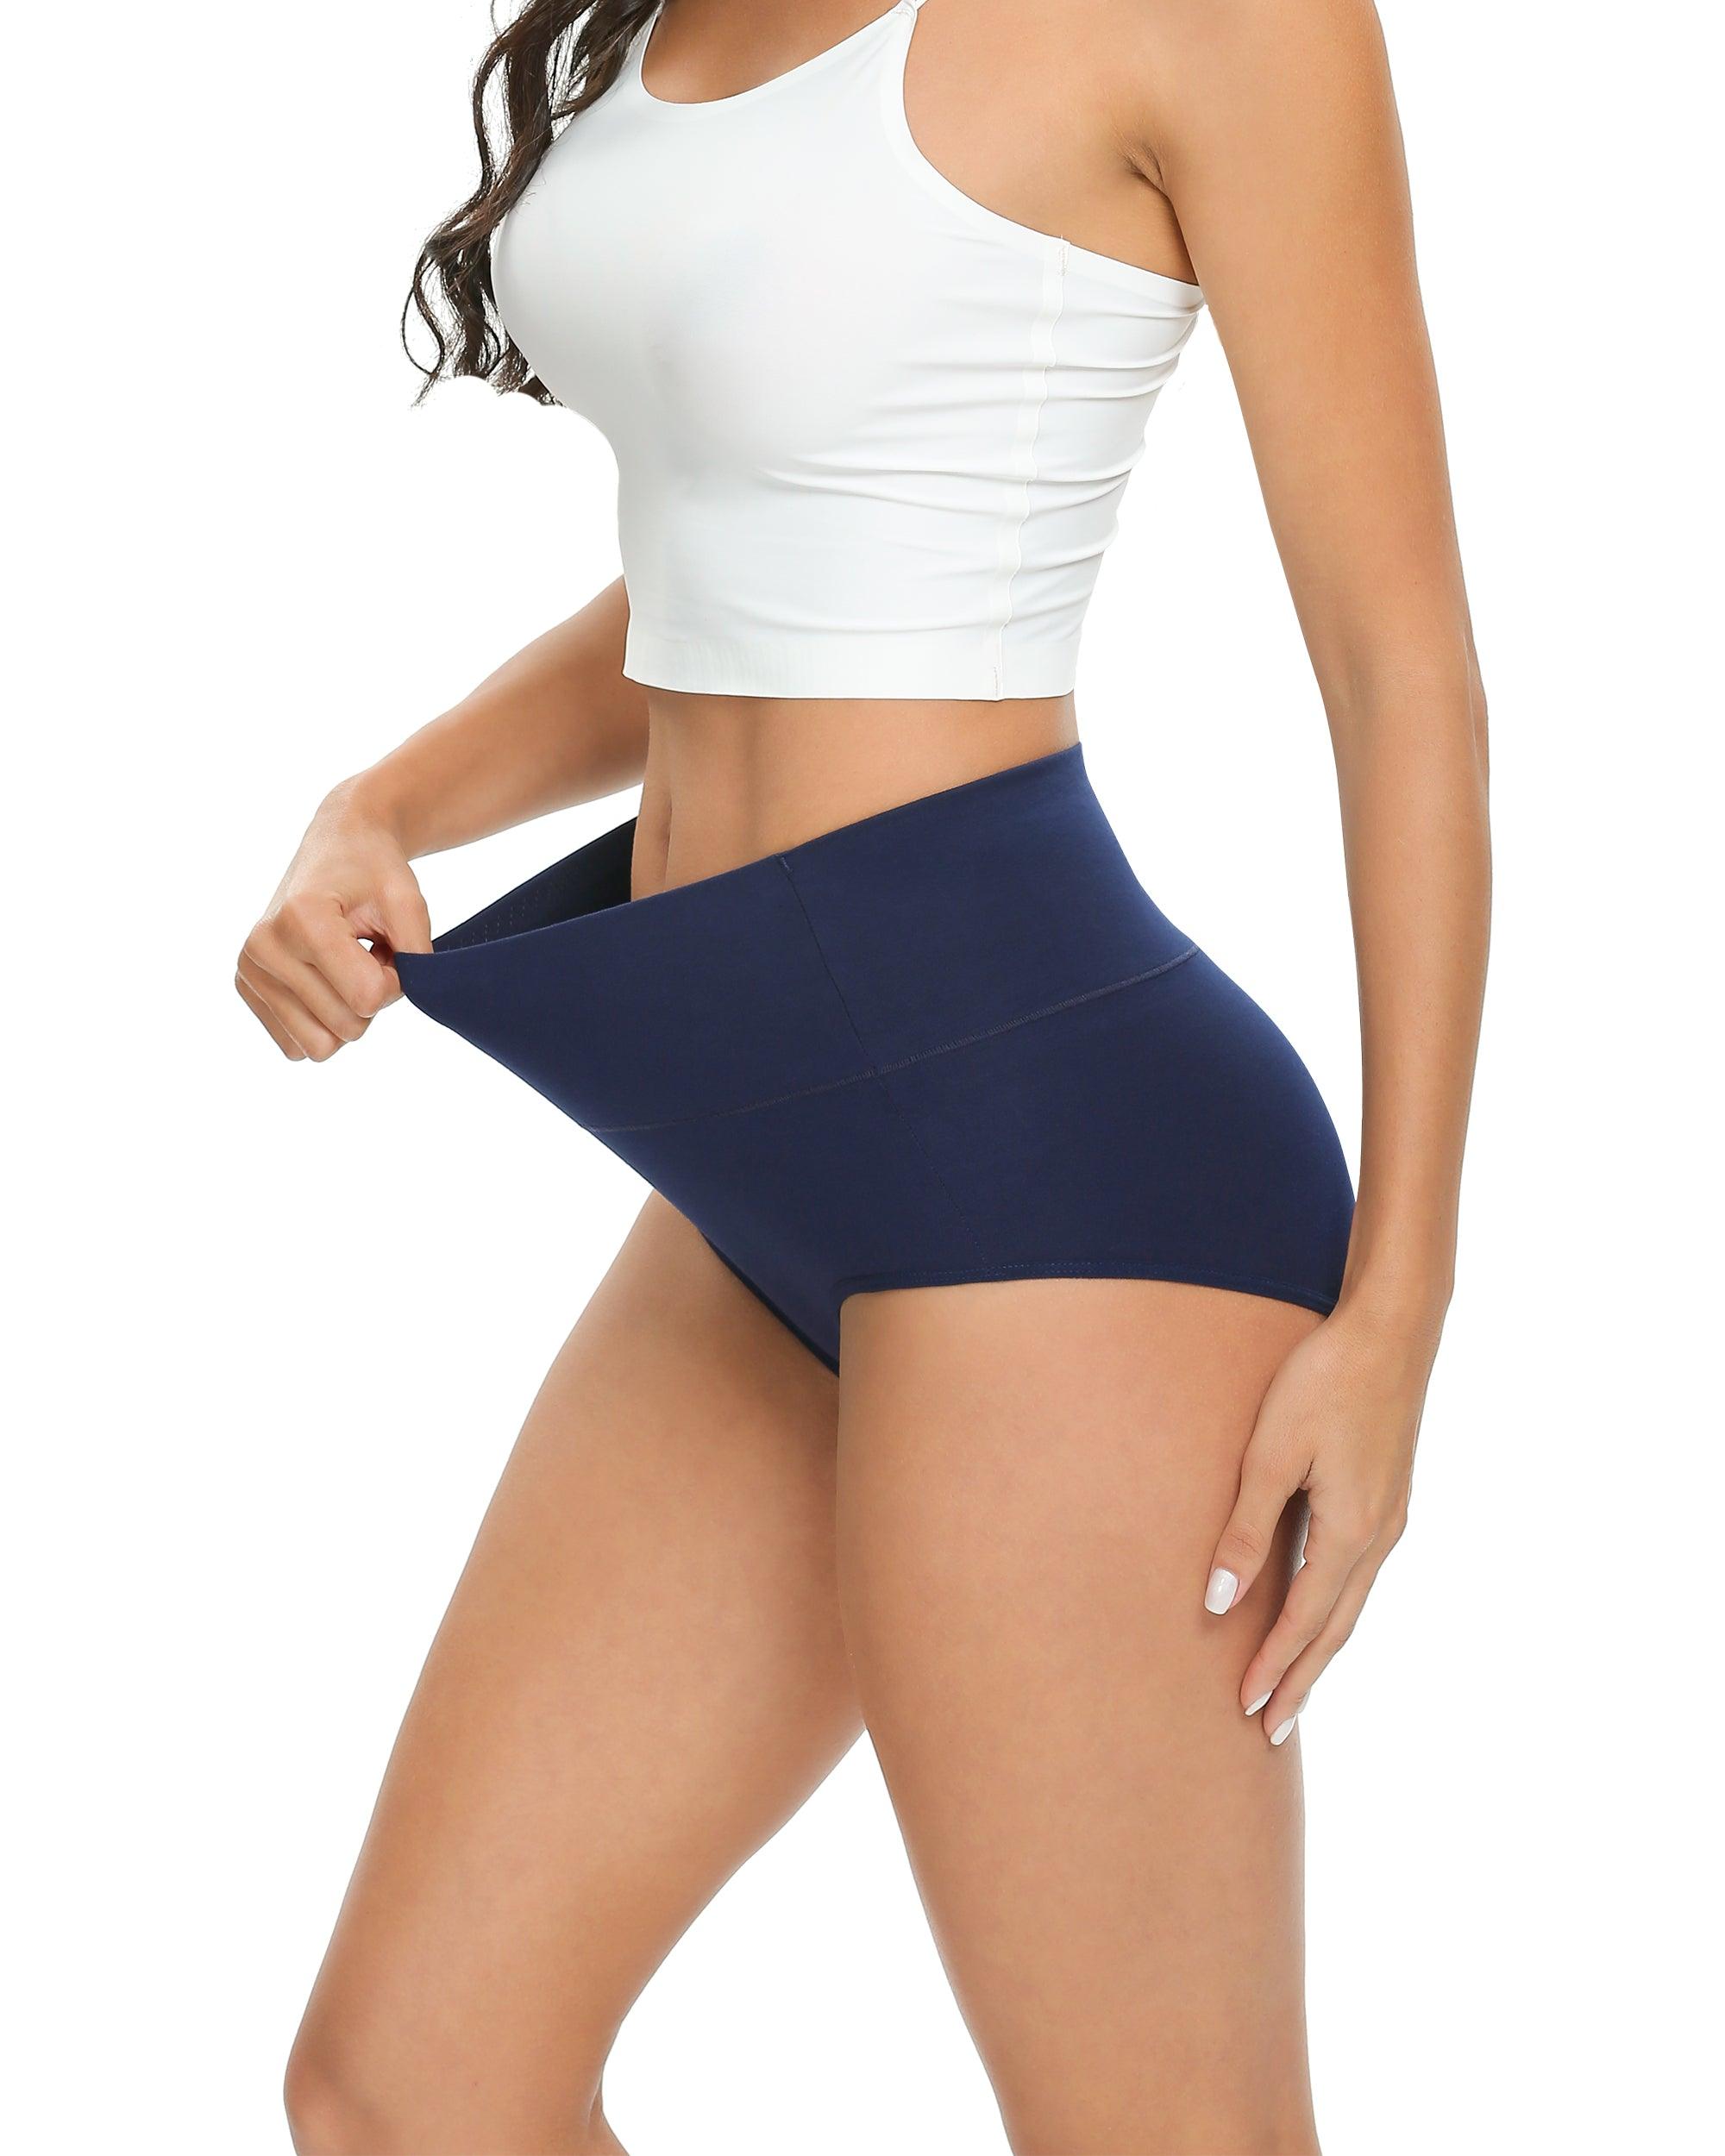 DISOLVE Womens Underwear Cotton Briefs - High Waist Tummy Control Panties  for Women Postpartum Underwear Soft Size (40 Till 44) 4XL Pack of 3 Assorted